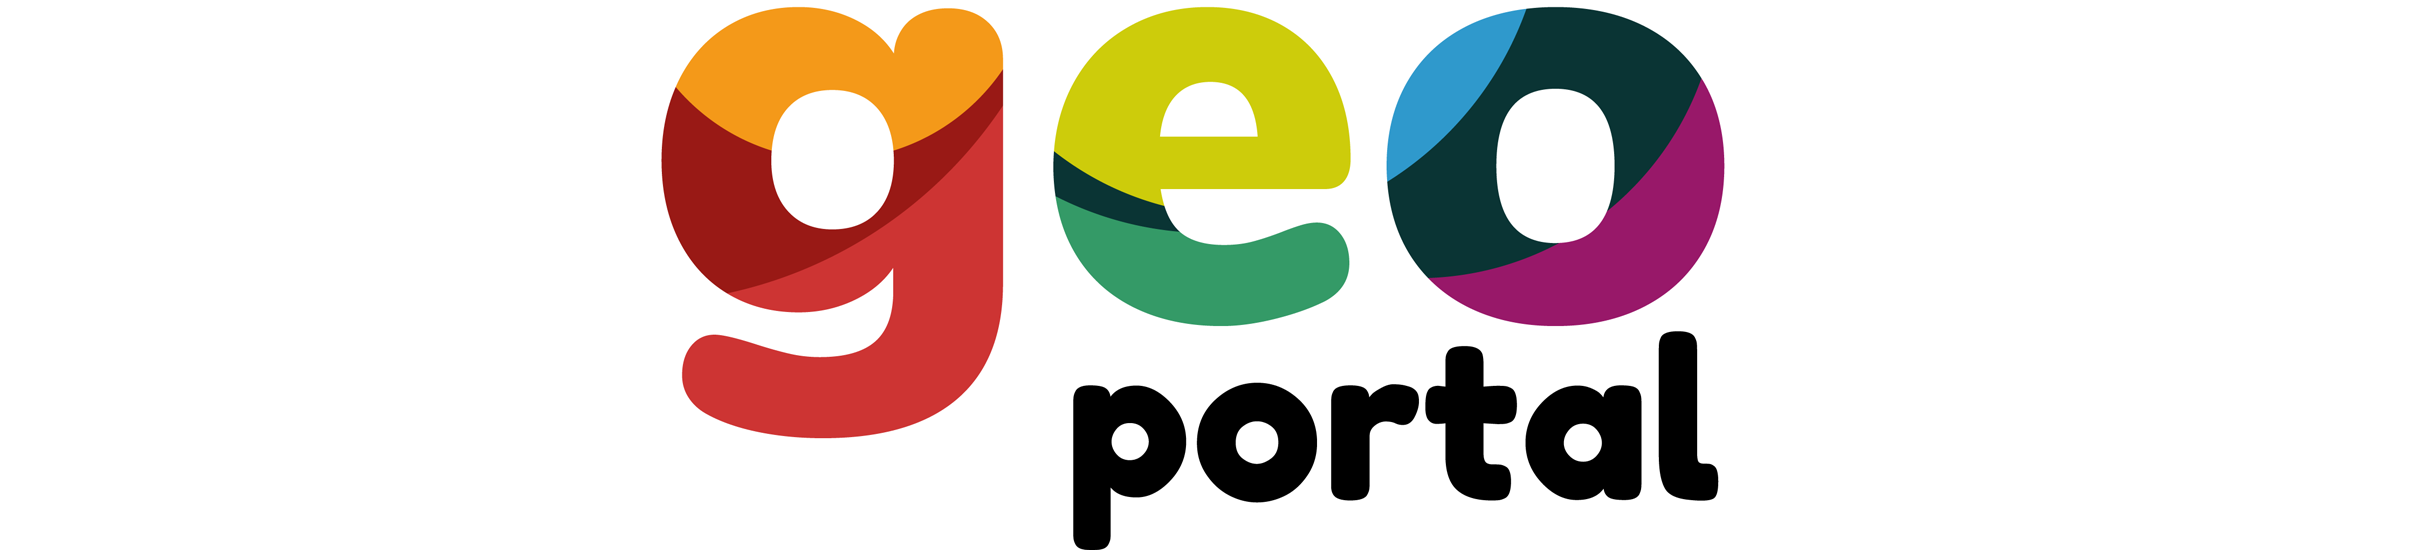 GeoPortal logo